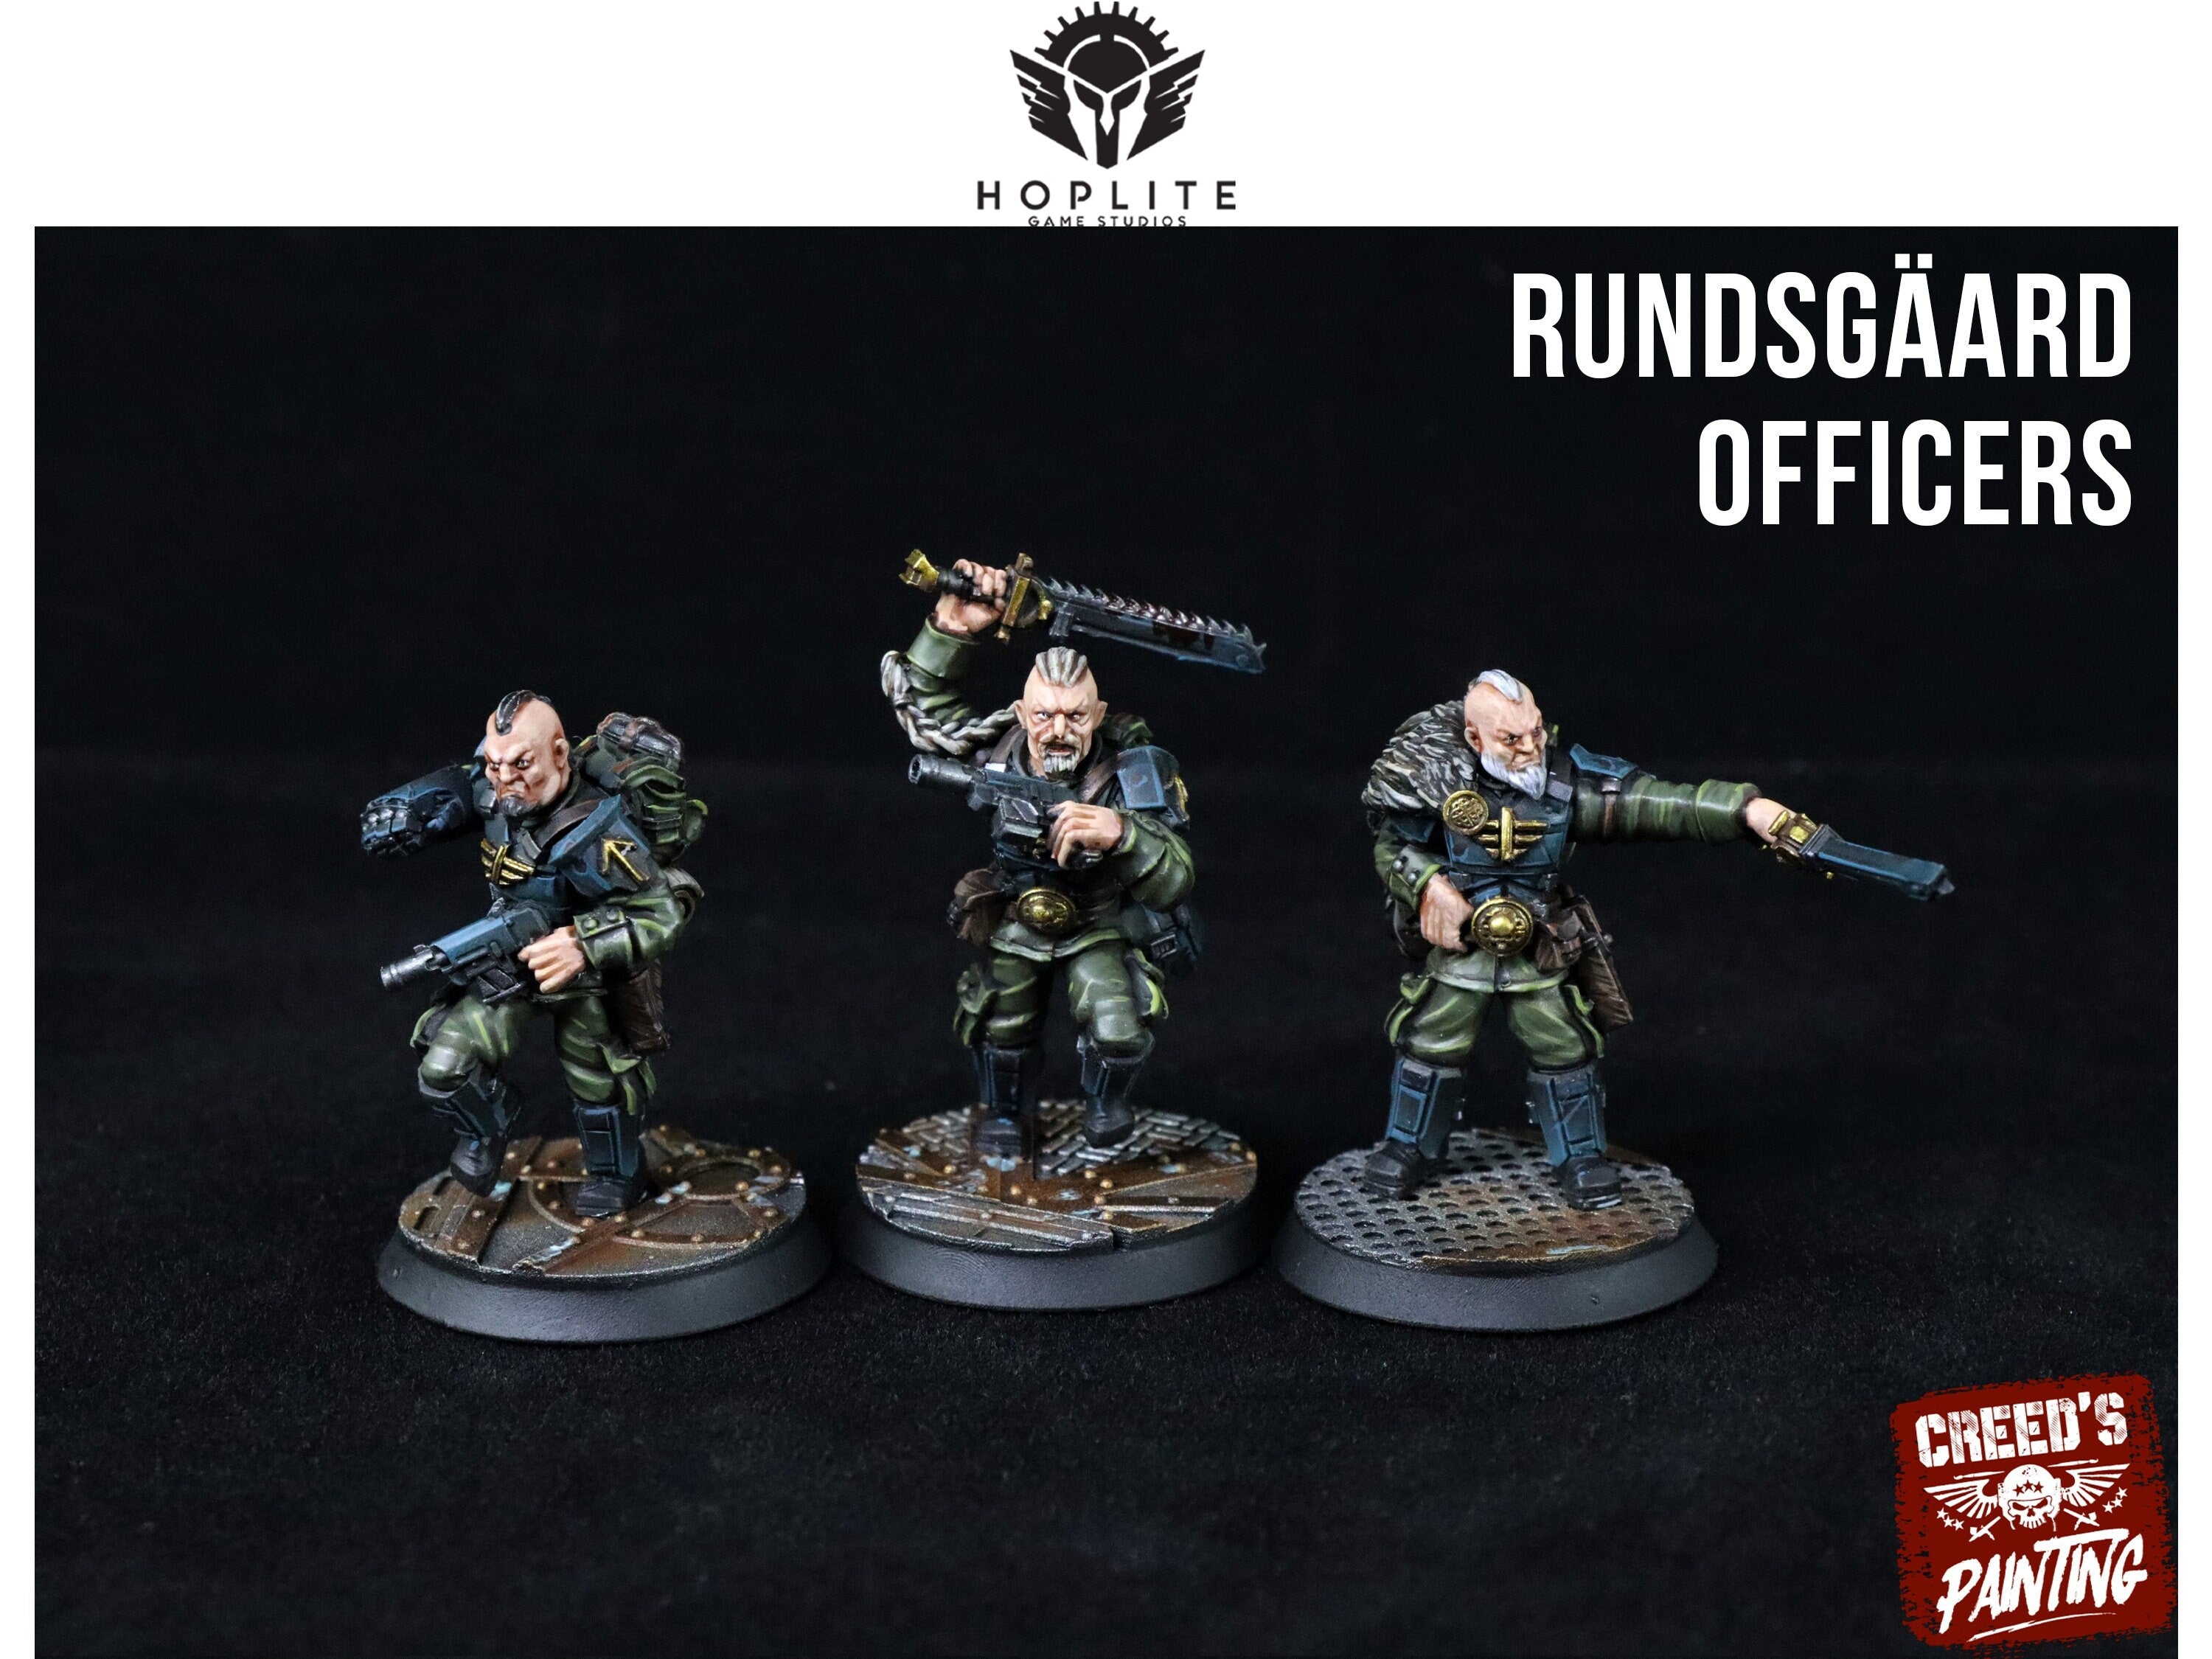 Rundsgaard: constructor de escuadrones de mando